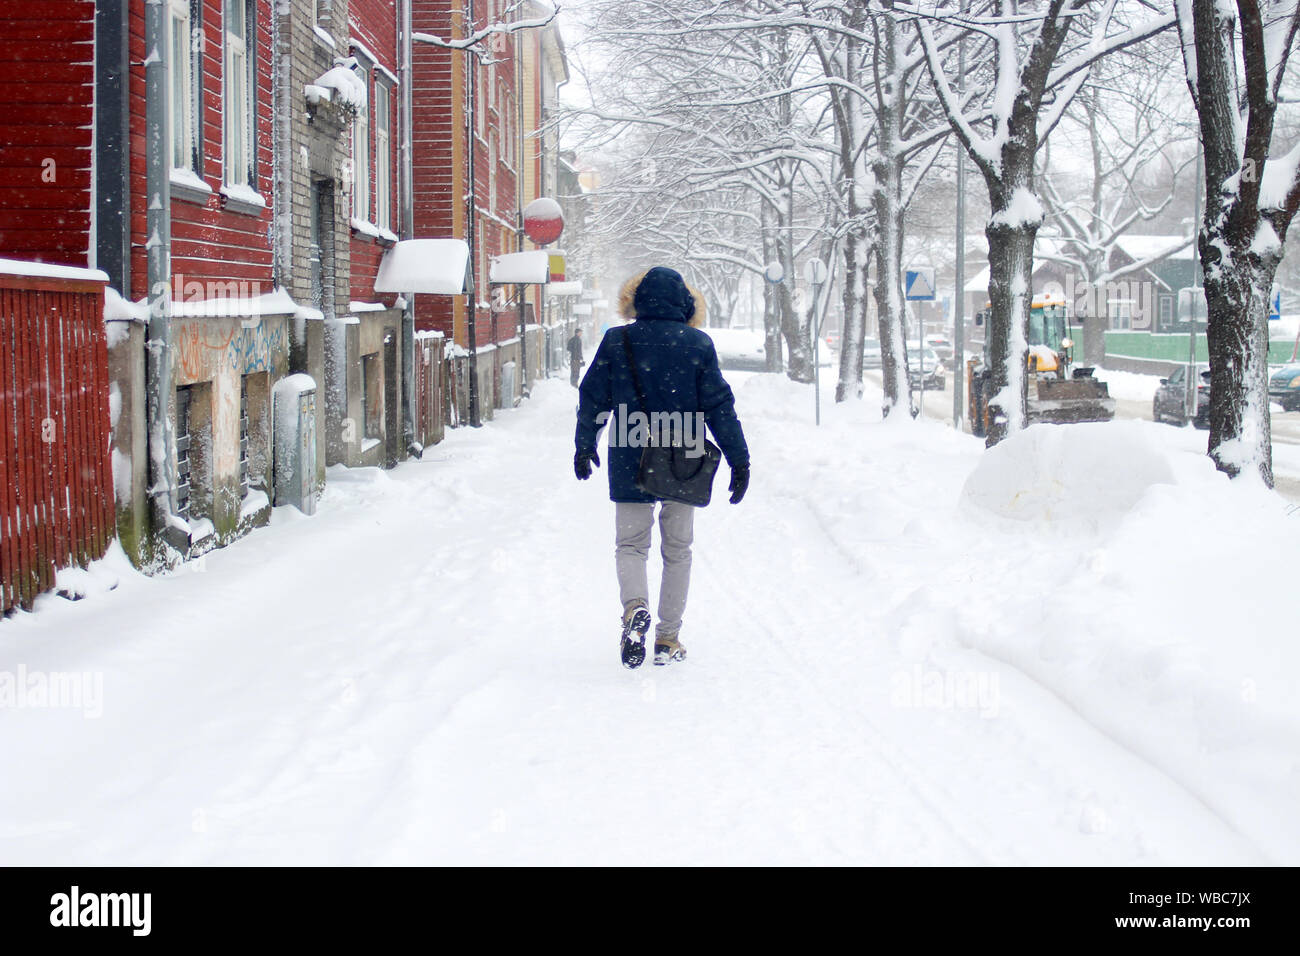 Schneereiche Winter Szene in der Stadt. Schneefall in einer kleinen Straße mit bunten Holzhäuser und ein Mann in Estland, Tallinn Stockfoto